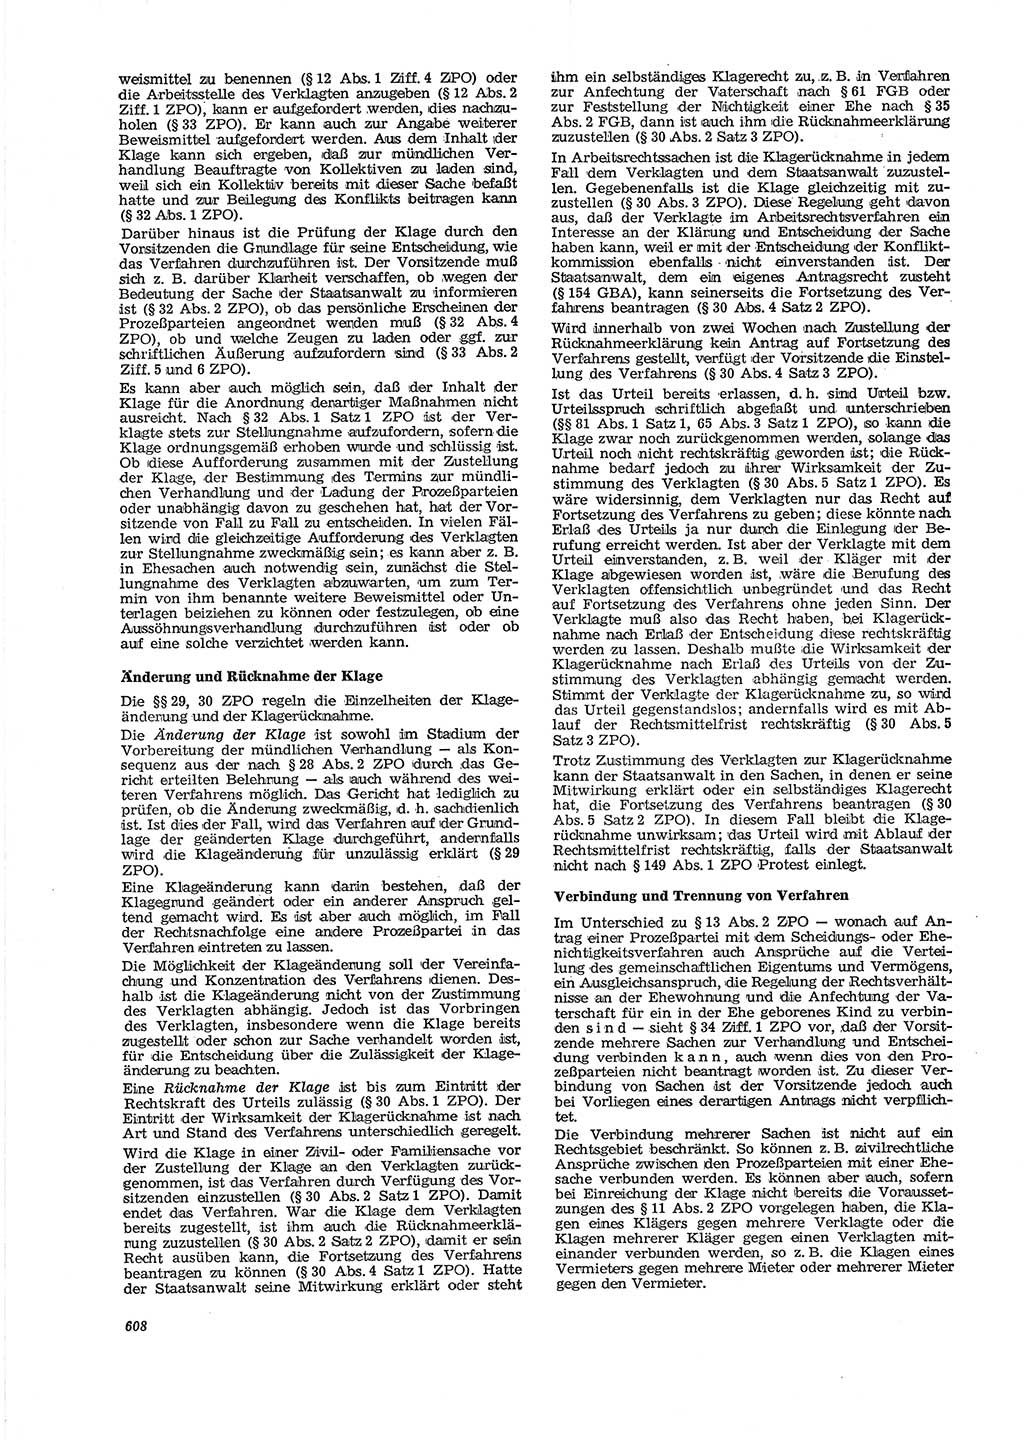 Neue Justiz (NJ), Zeitschrift für Recht und Rechtswissenschaft [Deutsche Demokratische Republik (DDR)], 29. Jahrgang 1975, Seite 608 (NJ DDR 1975, S. 608)